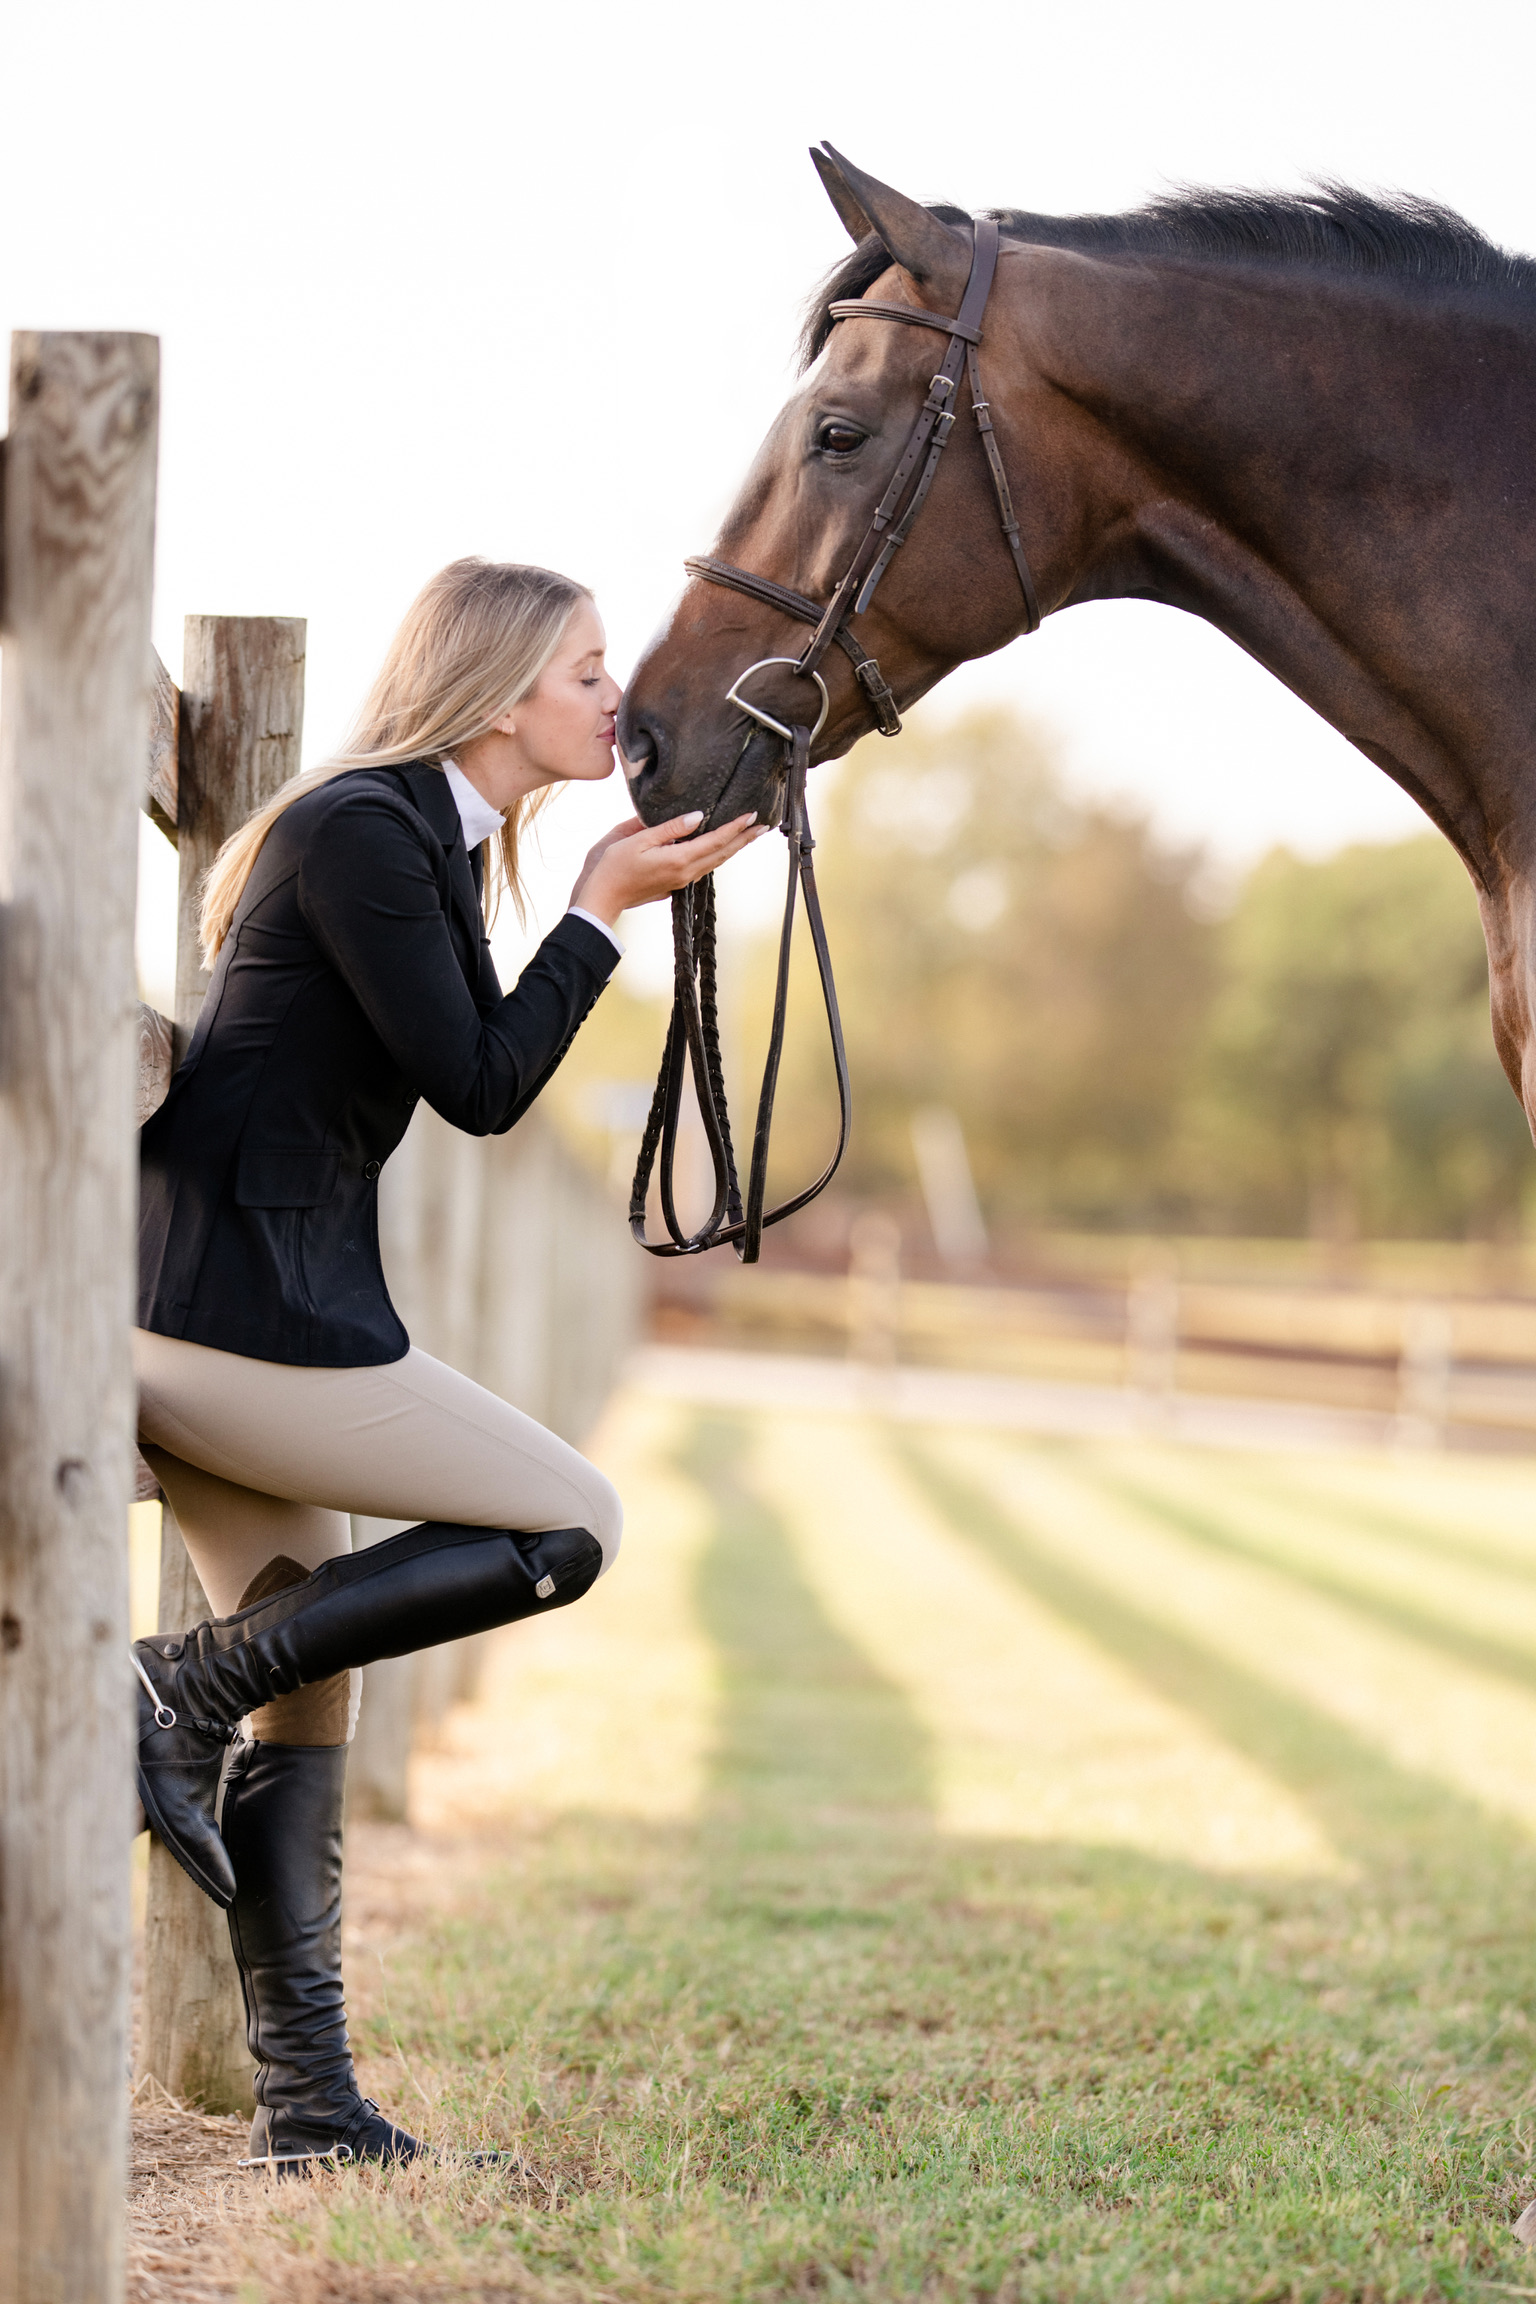 Company Spotlight: Equestrian Closet